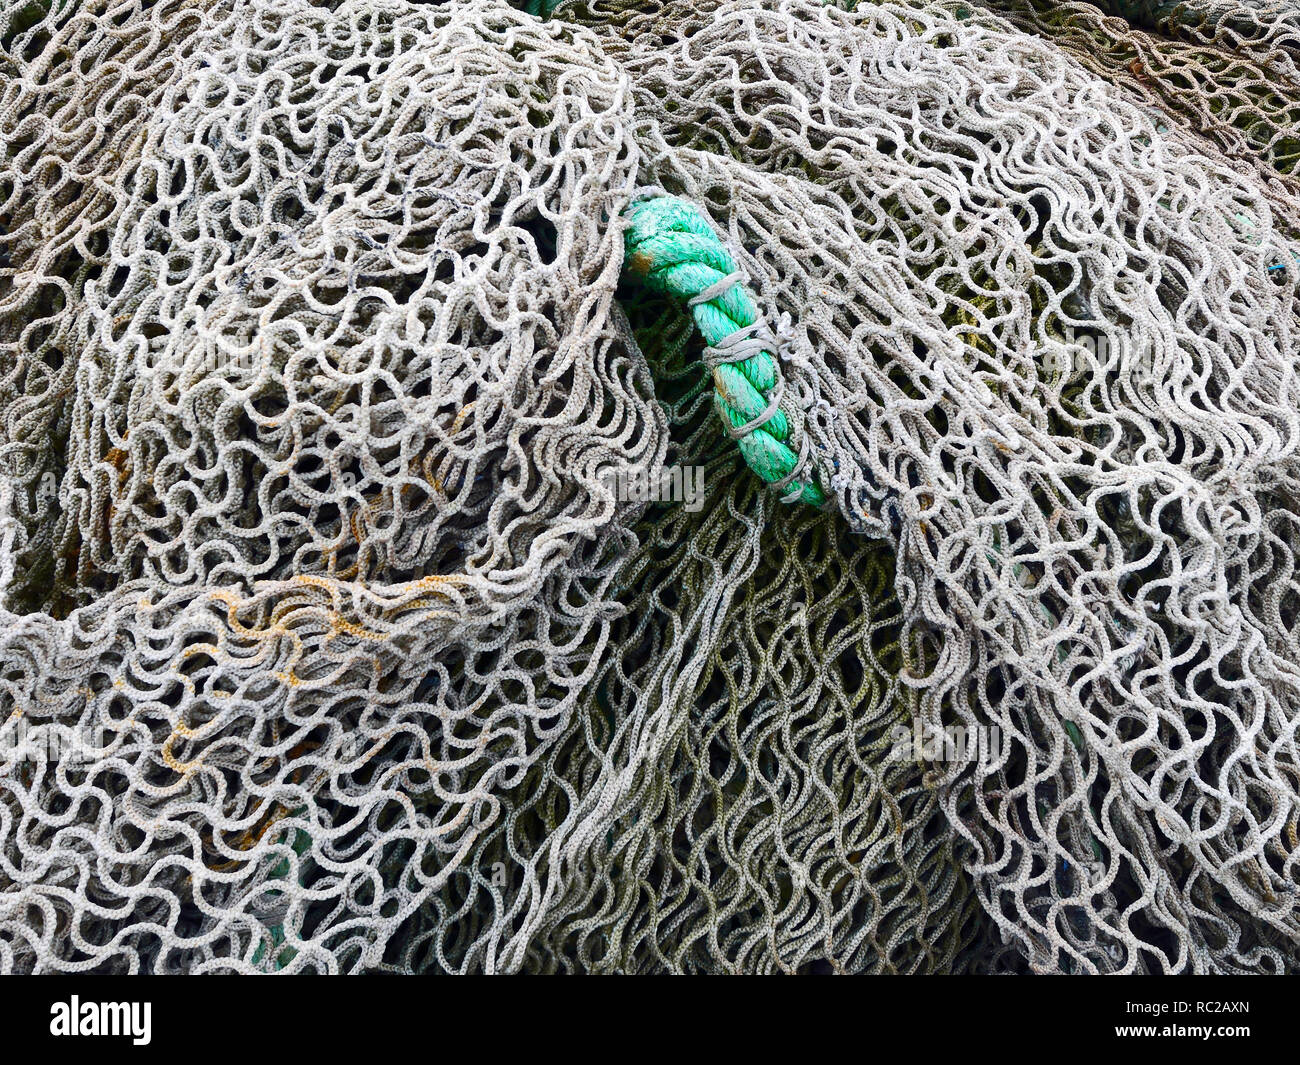 Una de las redes de pesca a lo largo de la costa de Bretaña, Francia Foto de stock